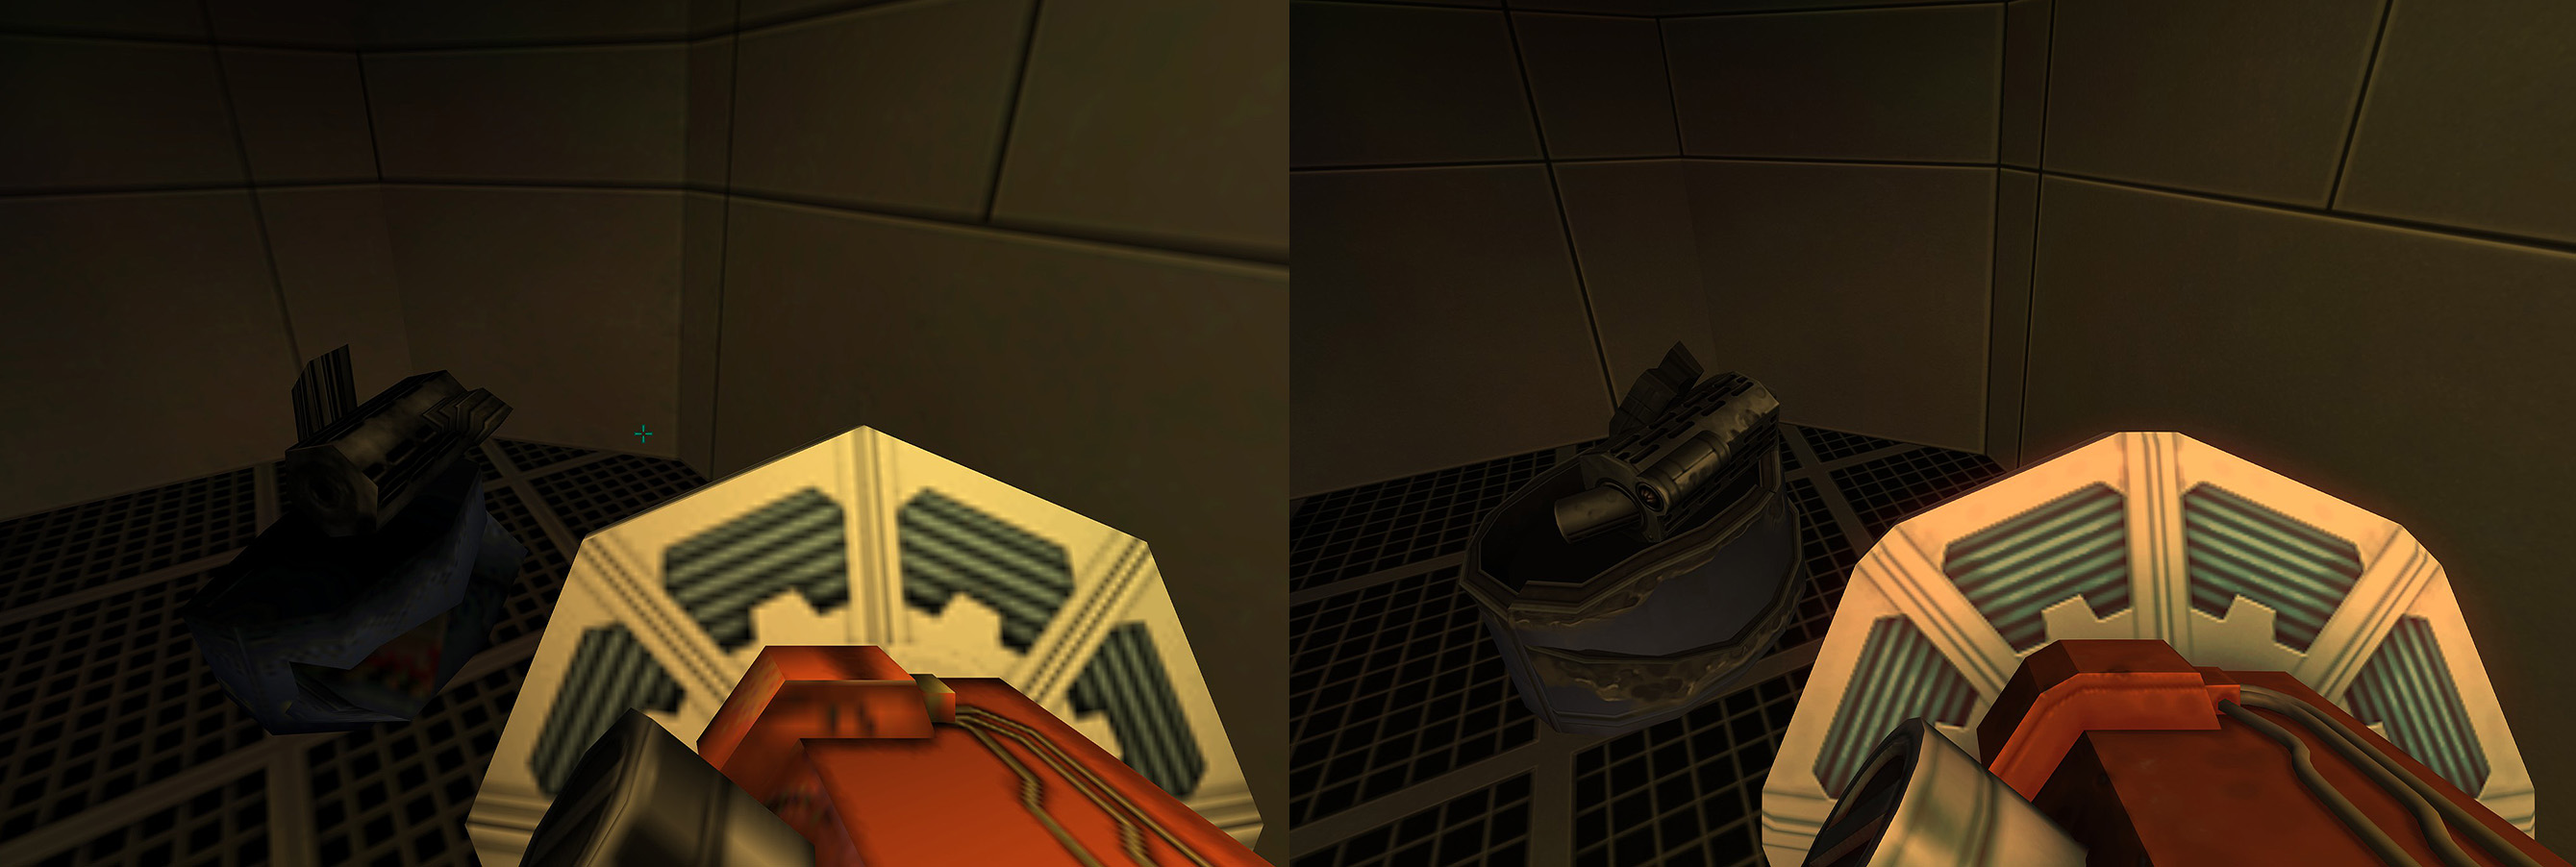 Vergleichsbild der System Shock Enhanced Edition